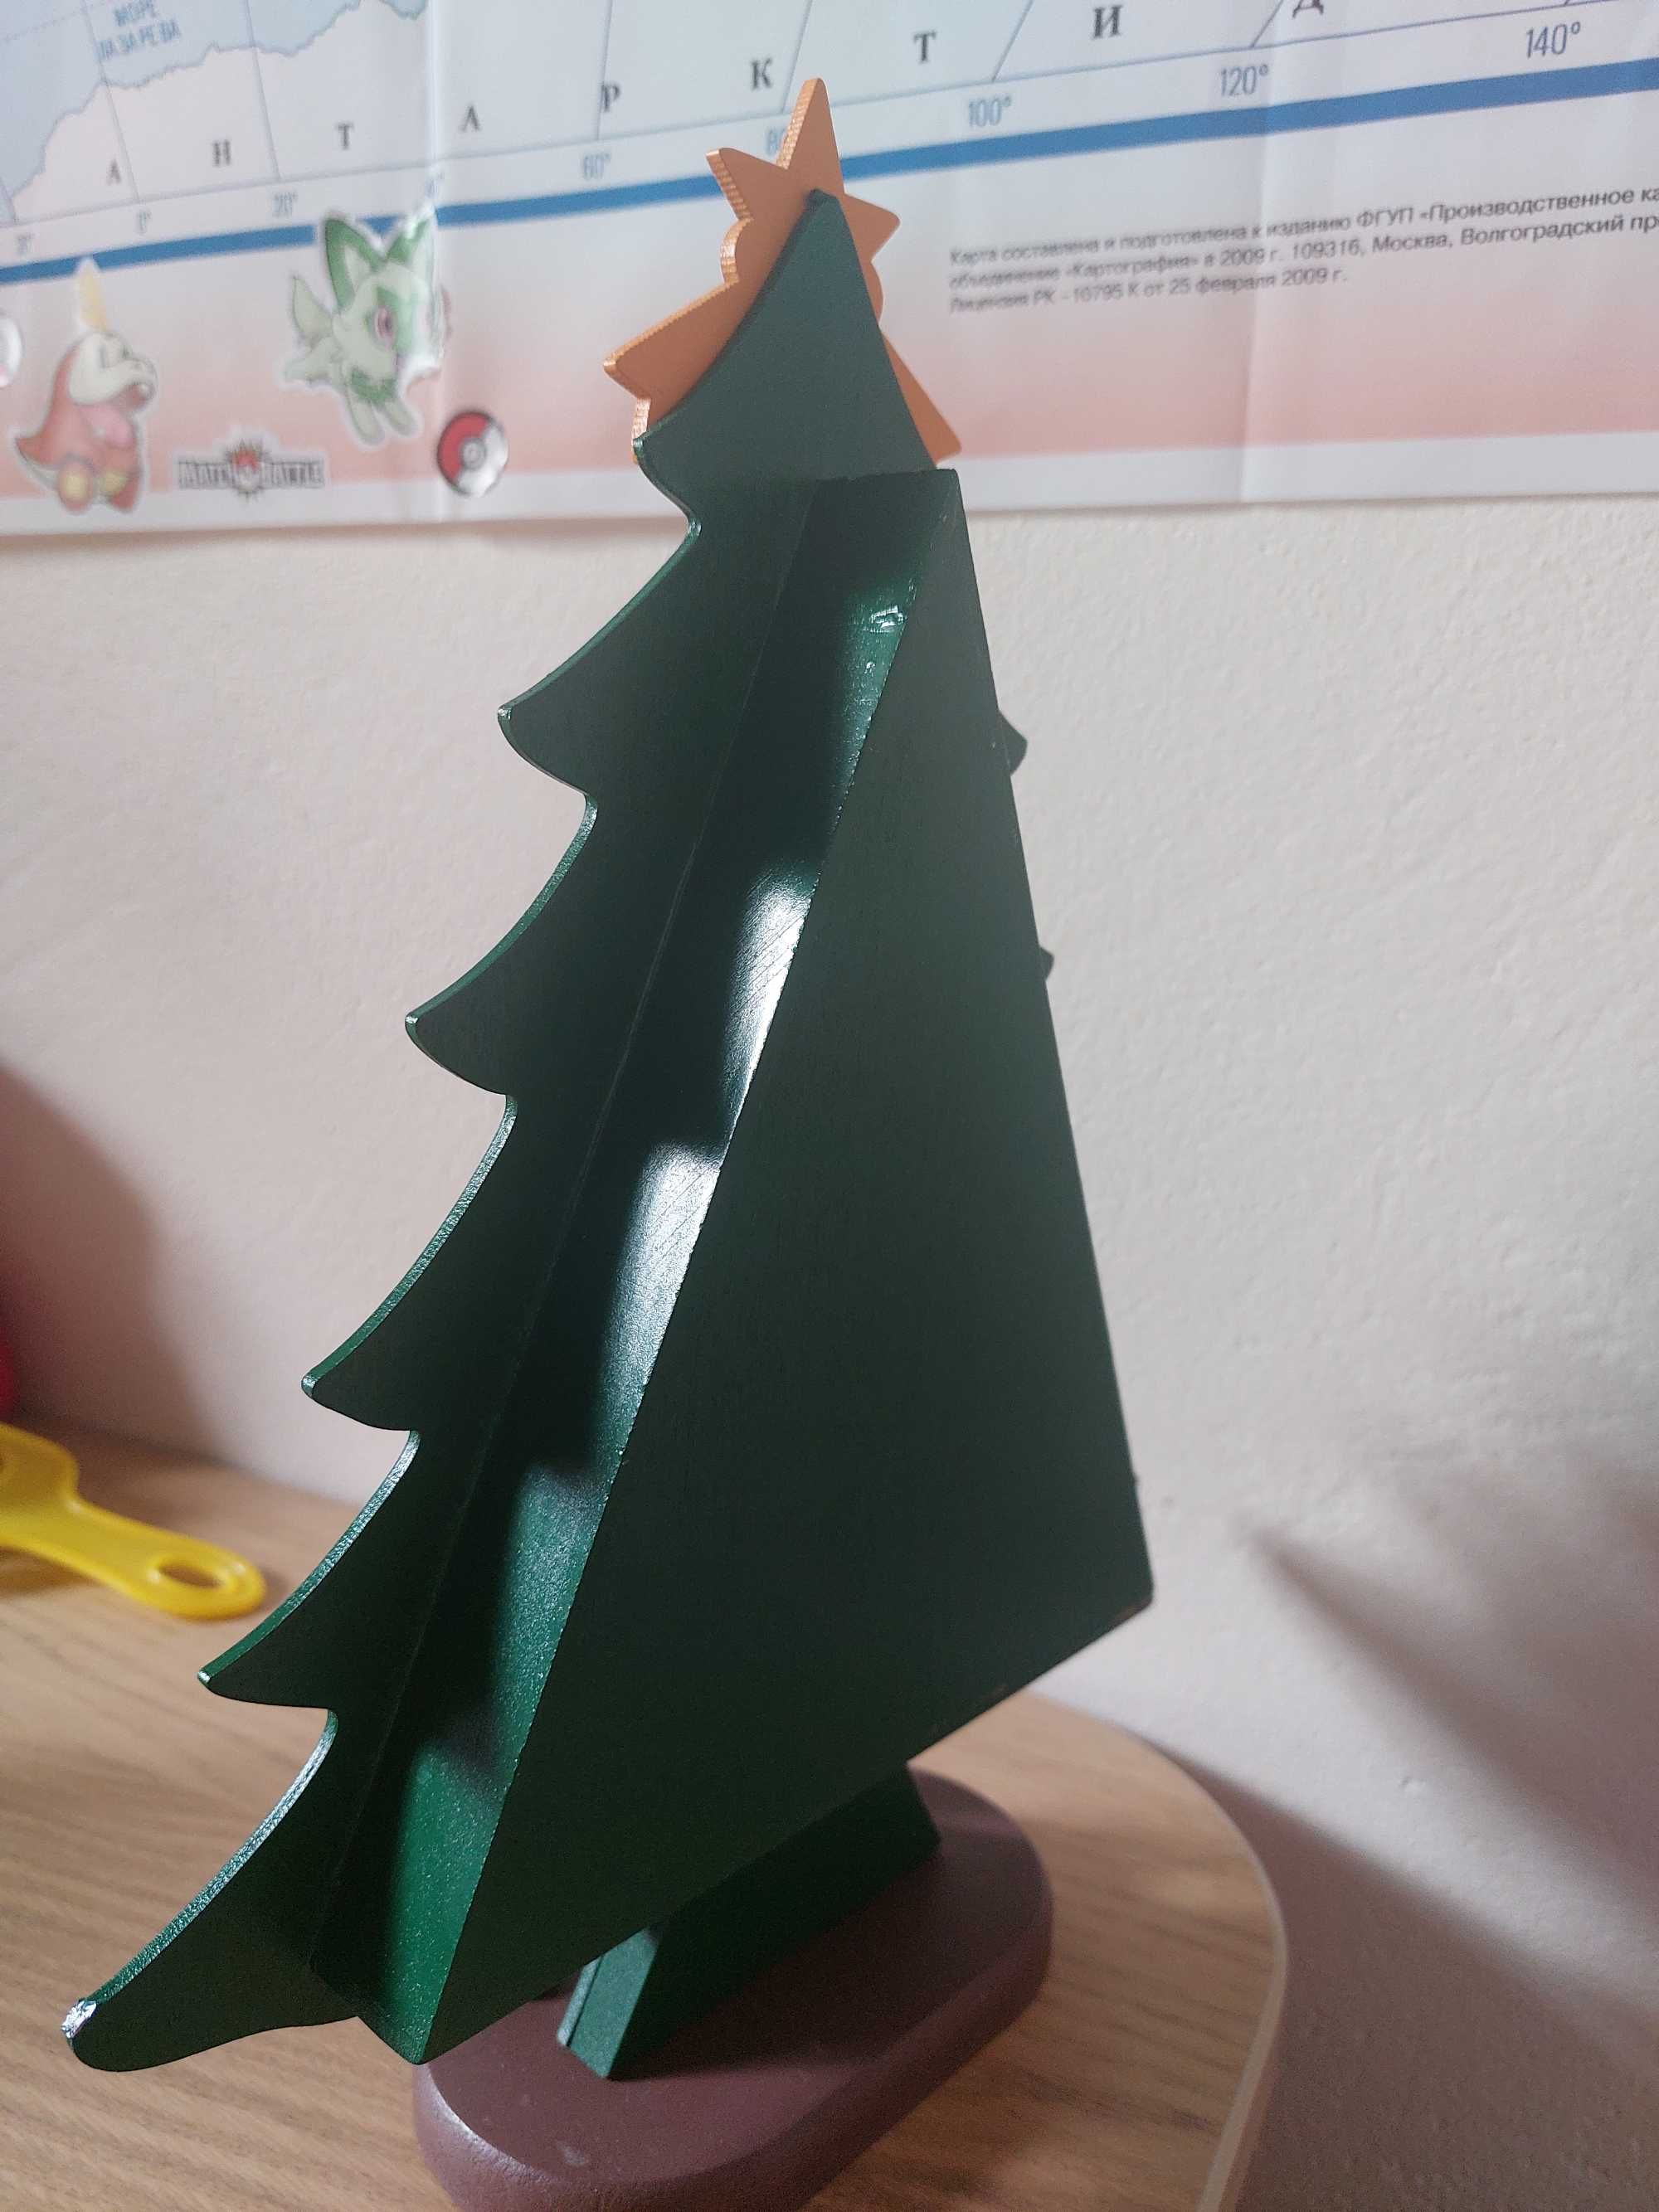 Drzewko świąteczne. Choinka.